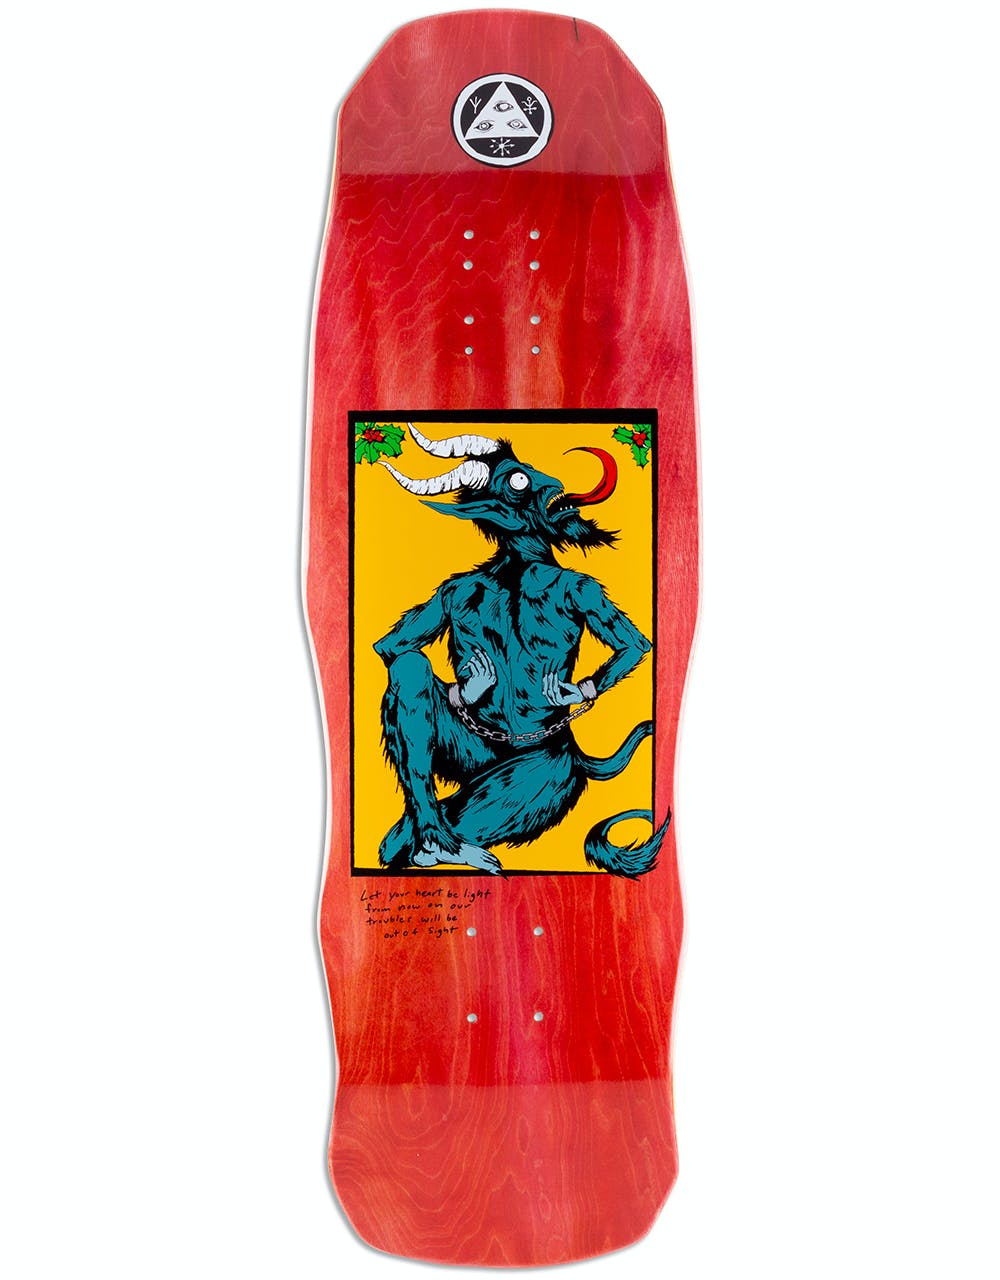 Welcome Krampus on Dark Lord Skateboard Deck - 9.75"